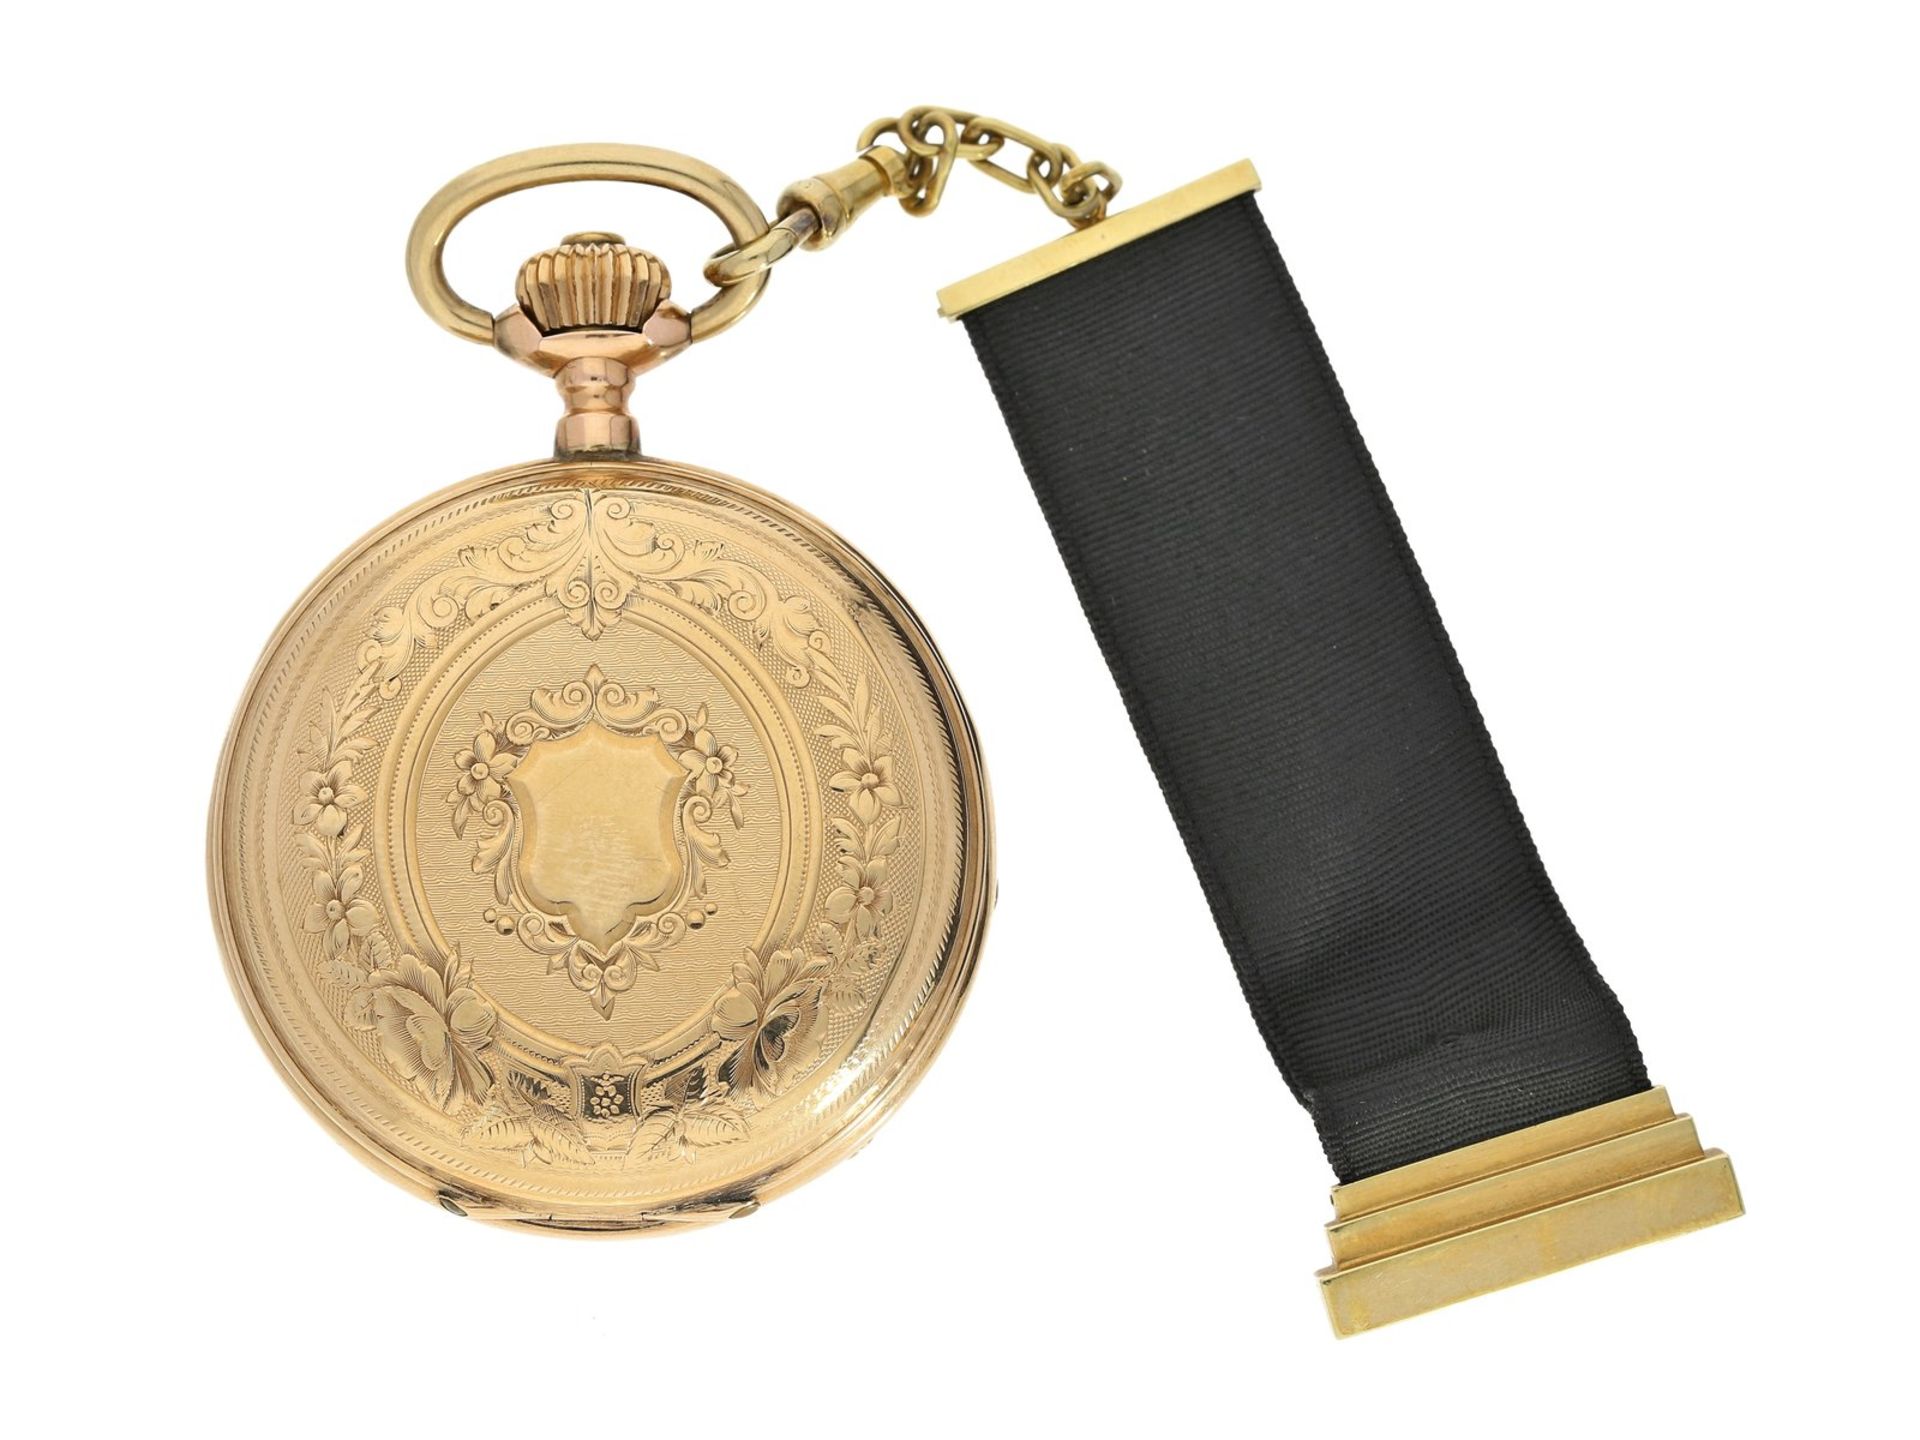 Taschenuhr: goldene Taschenuhr mit goldener Chatelaine, Ducommun-Sandoz & Cie. La Chaux-de-Fonds, um